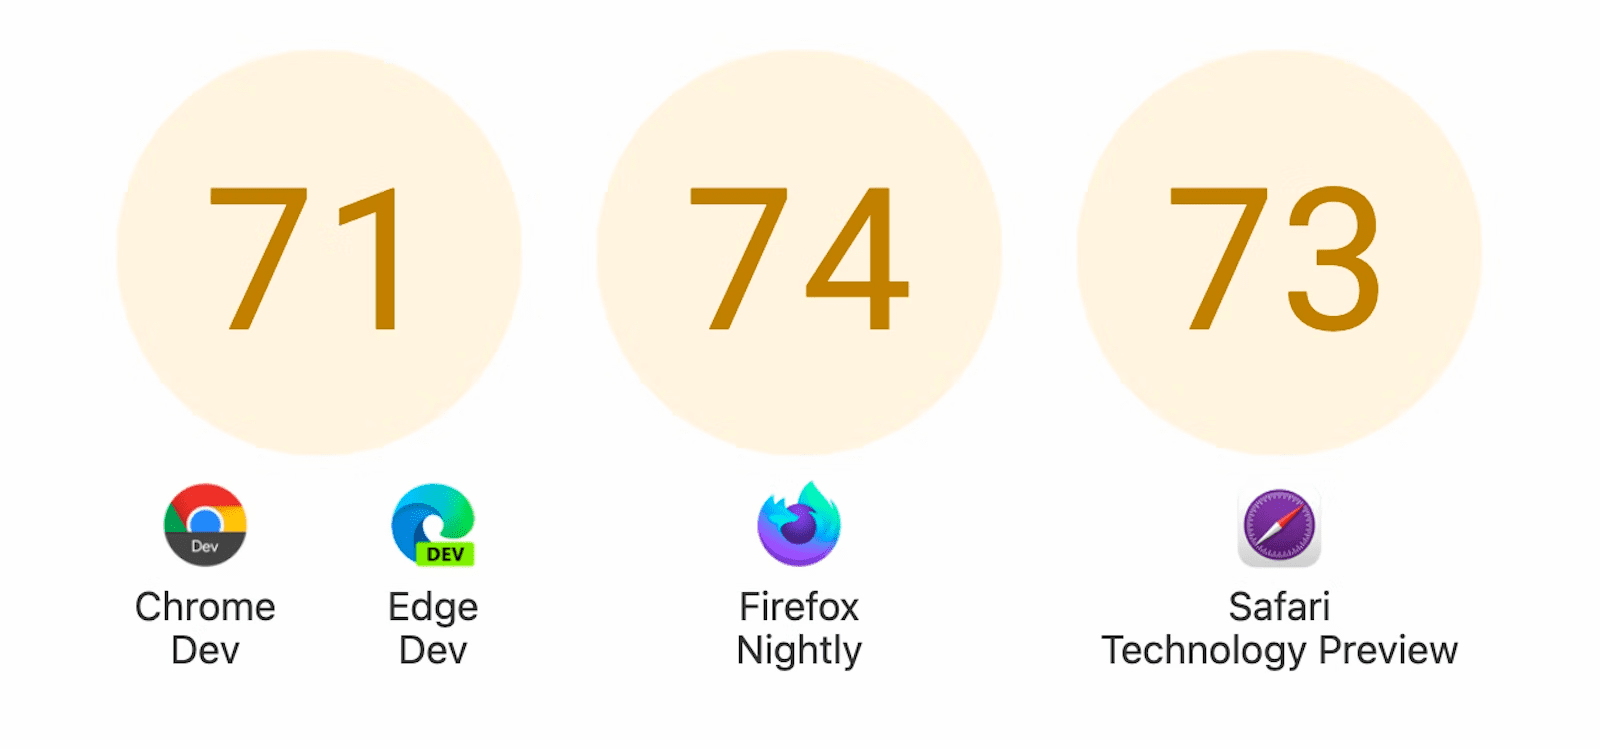 स्कोर वाली तीन सर्कल दिखाई जा रही हैं: Chrome Dev और Edge Dev के लिए 71, Firefox Nightly के लिए 74, और Safari टेक्नोलॉजी प्रीव्यू के लिए 73.